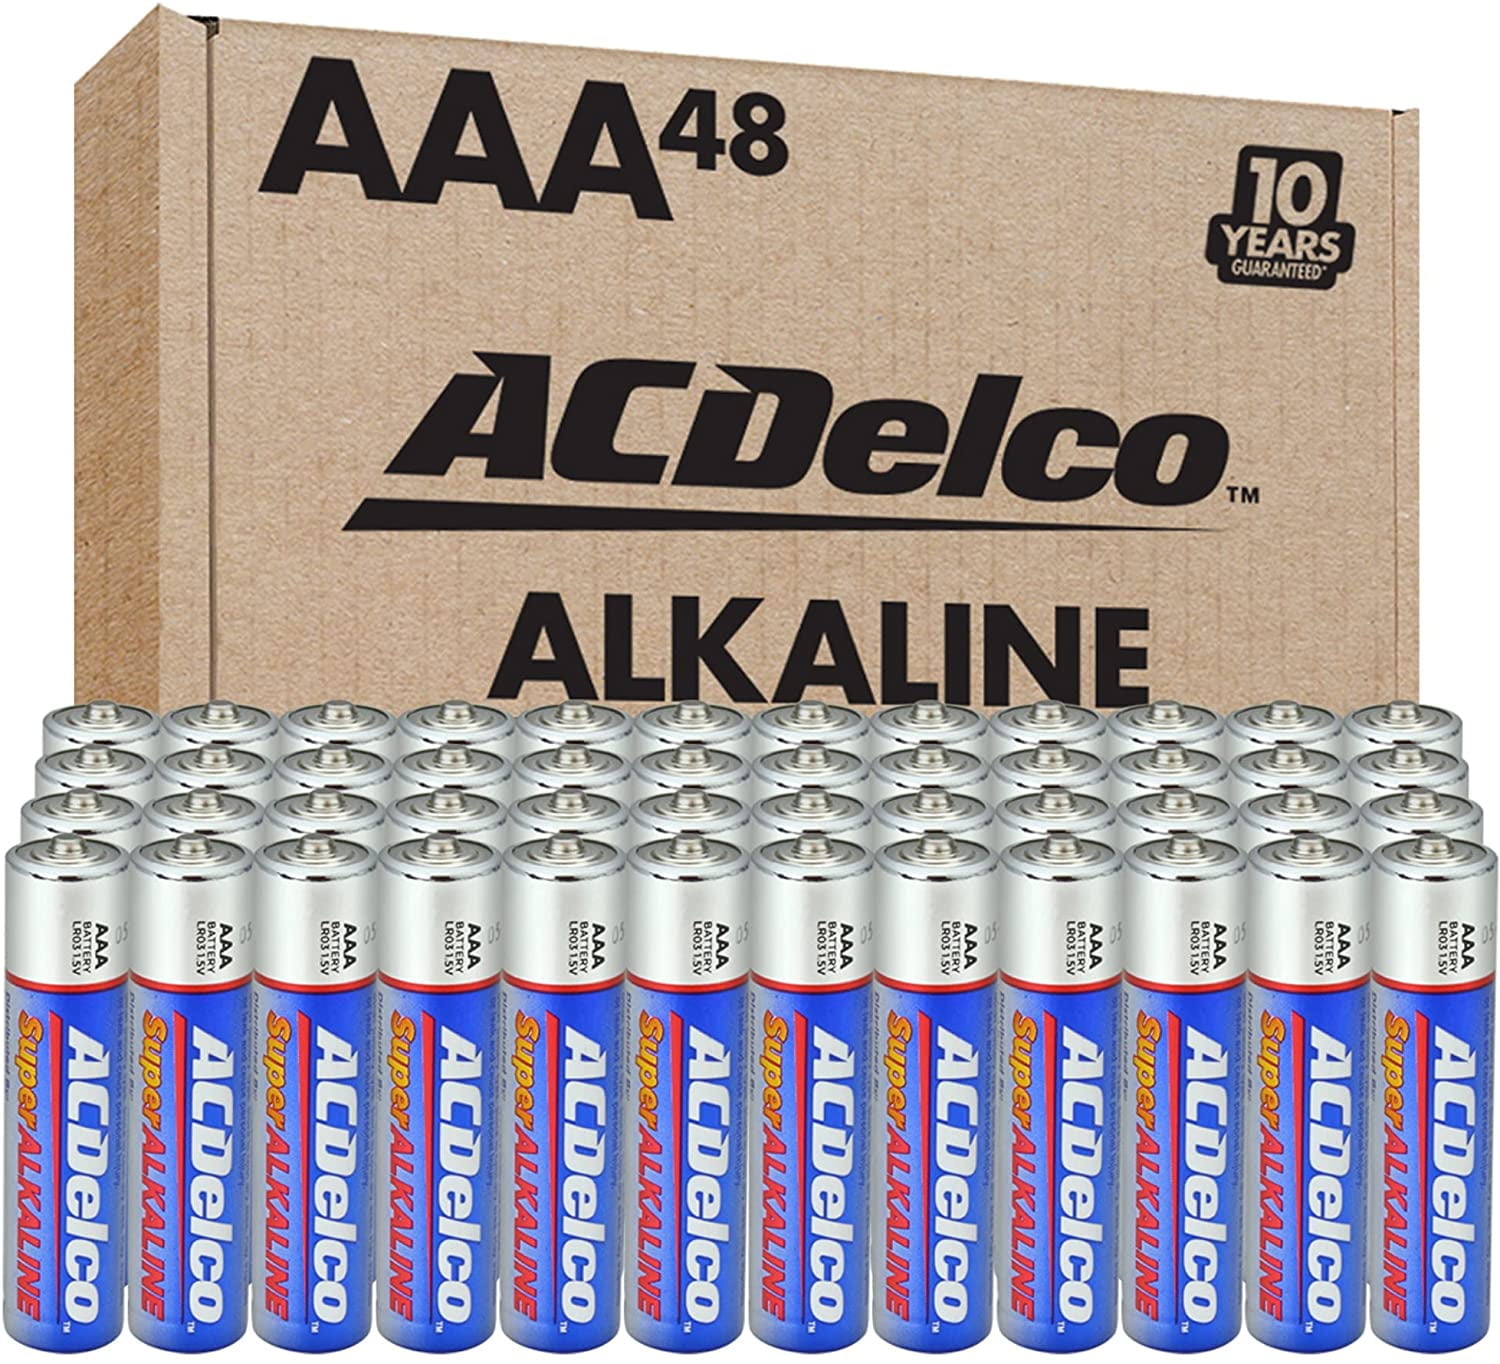 ACDelco Super Alkaline Batteries, AAA - 48 pack